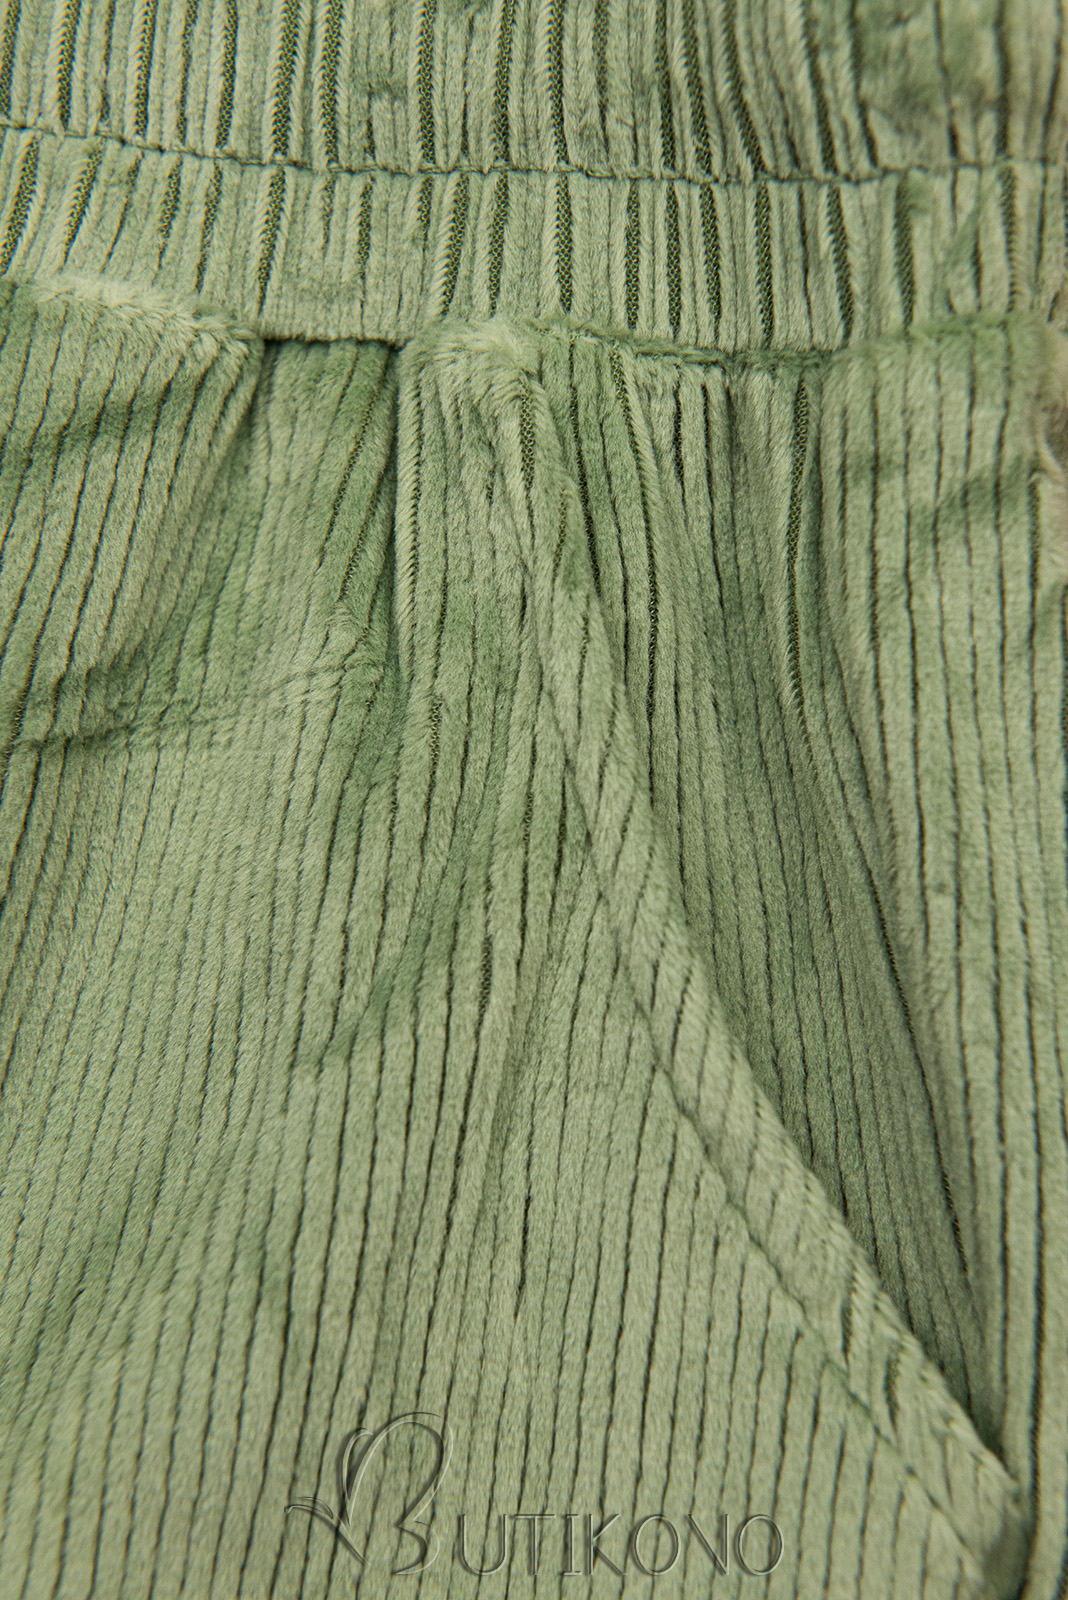 Zelené ležérní kalhoty s manšestrovým vzorem